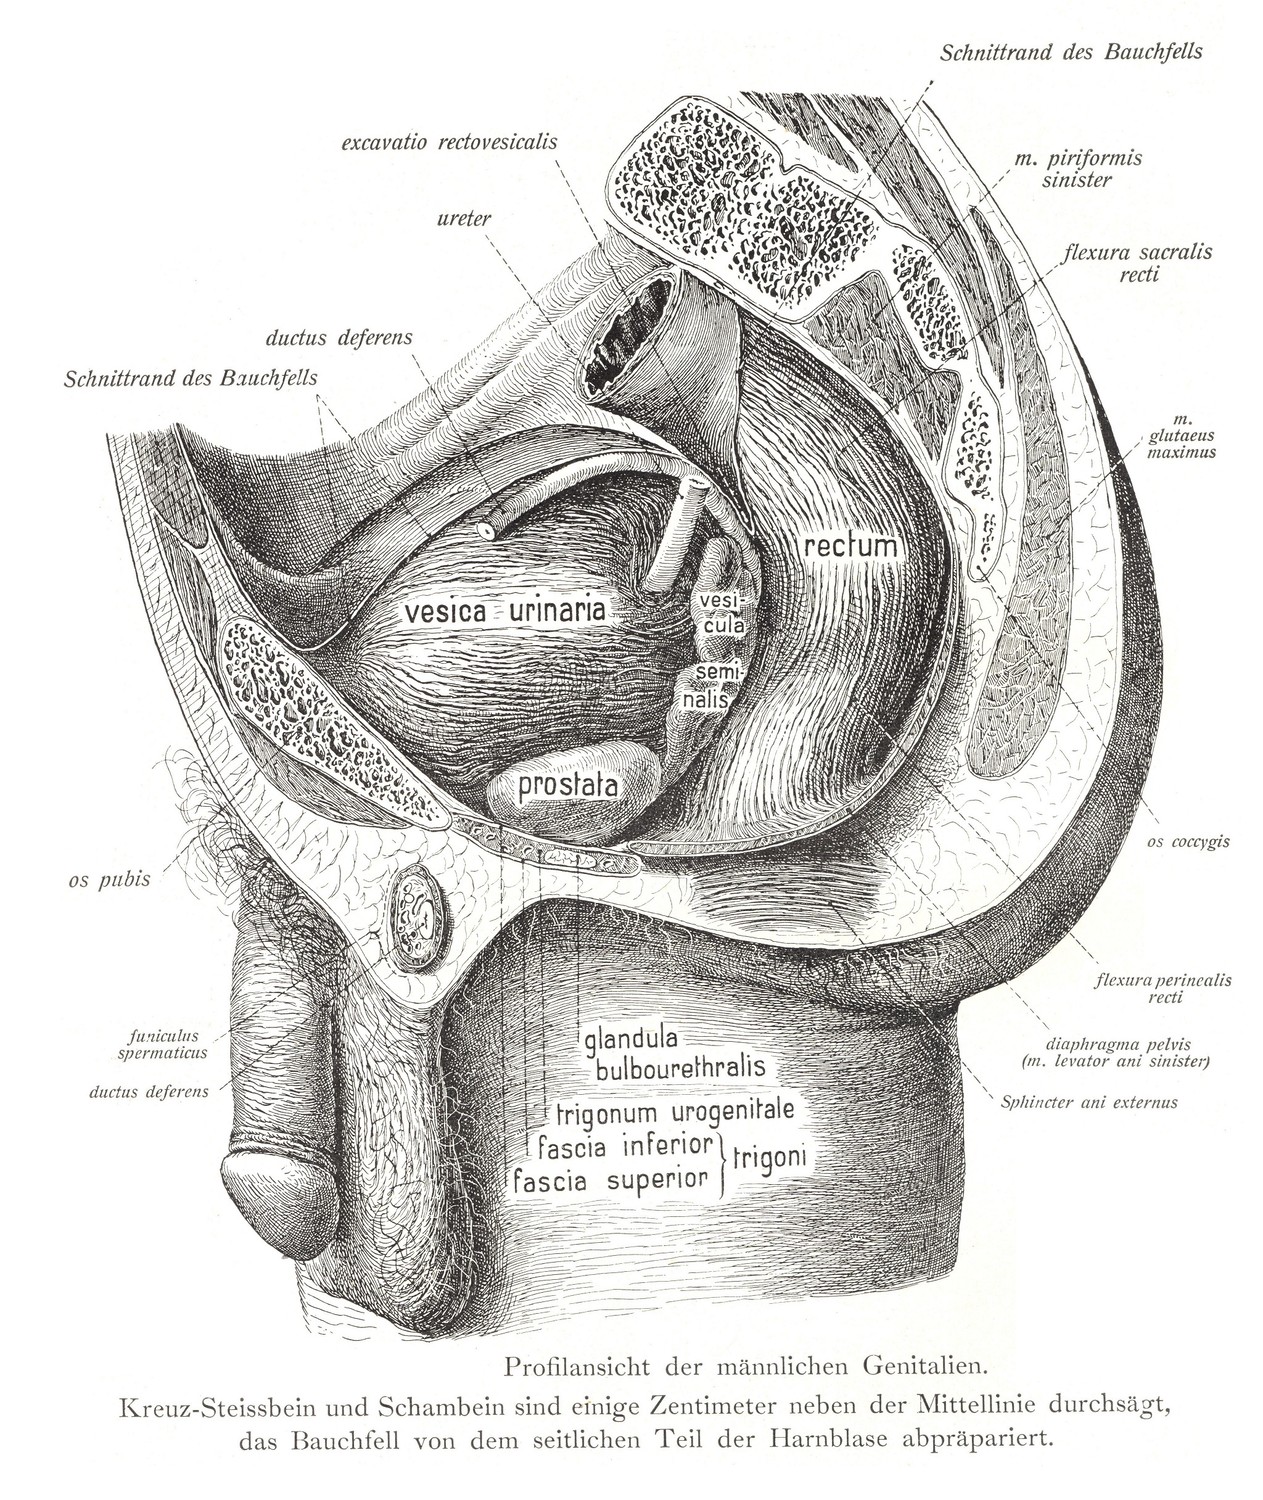 Профиль мужских гениталий. Крестец, копчик и лобковая кость распилены на несколько сантиметров от средней линии, брюшину рассекают от латеральной части мочевого пузыря.